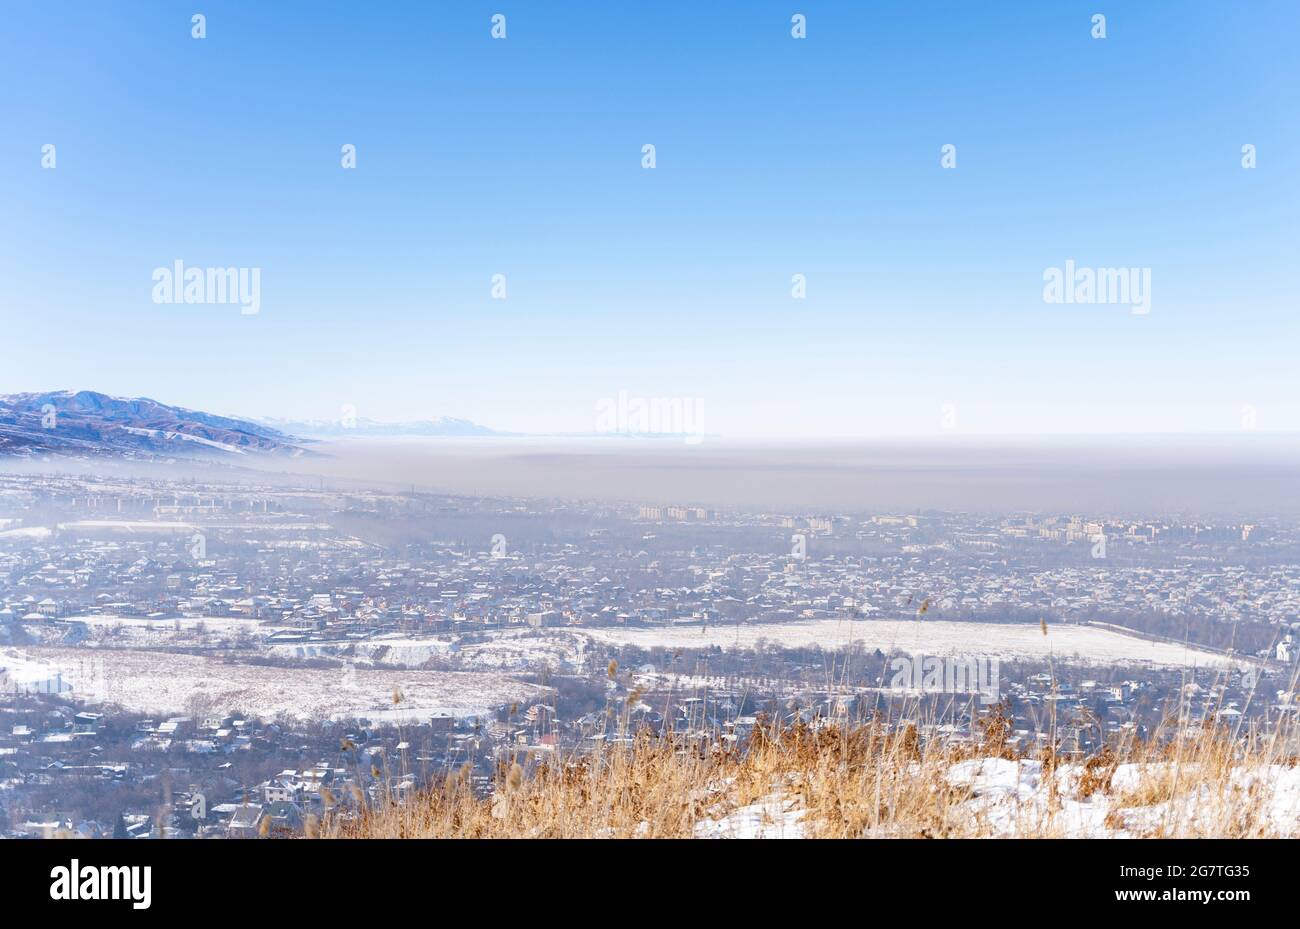 Vue sur la ville d'Almaty et le smog. Almaty, Kazakhstan. Banque D'Images